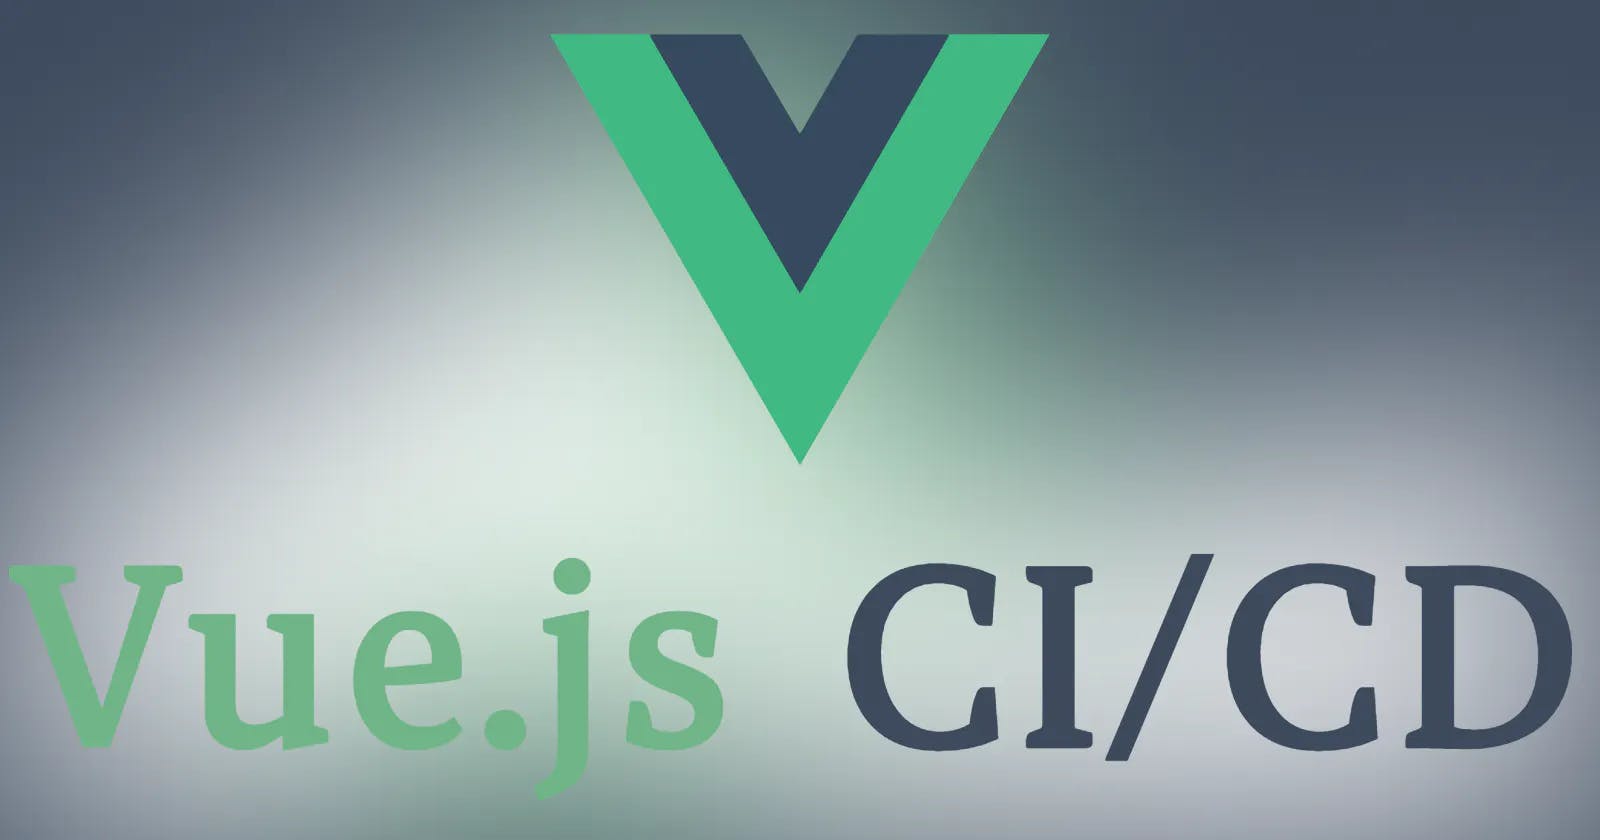 Vue.js CI/CD: Continuous Integration